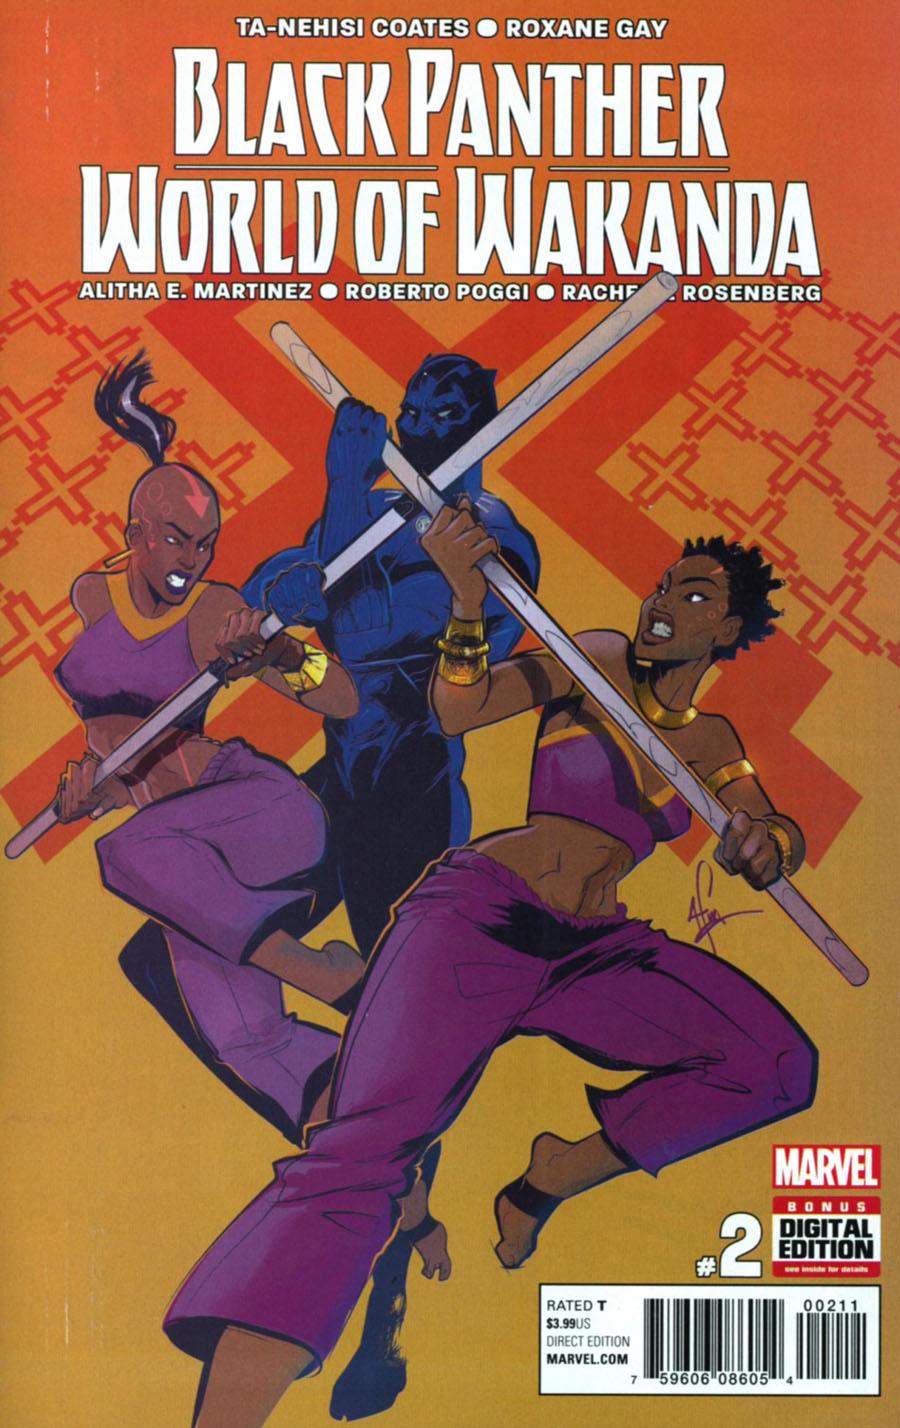 Black Panther World Of Wakanda Vol. 1 #2